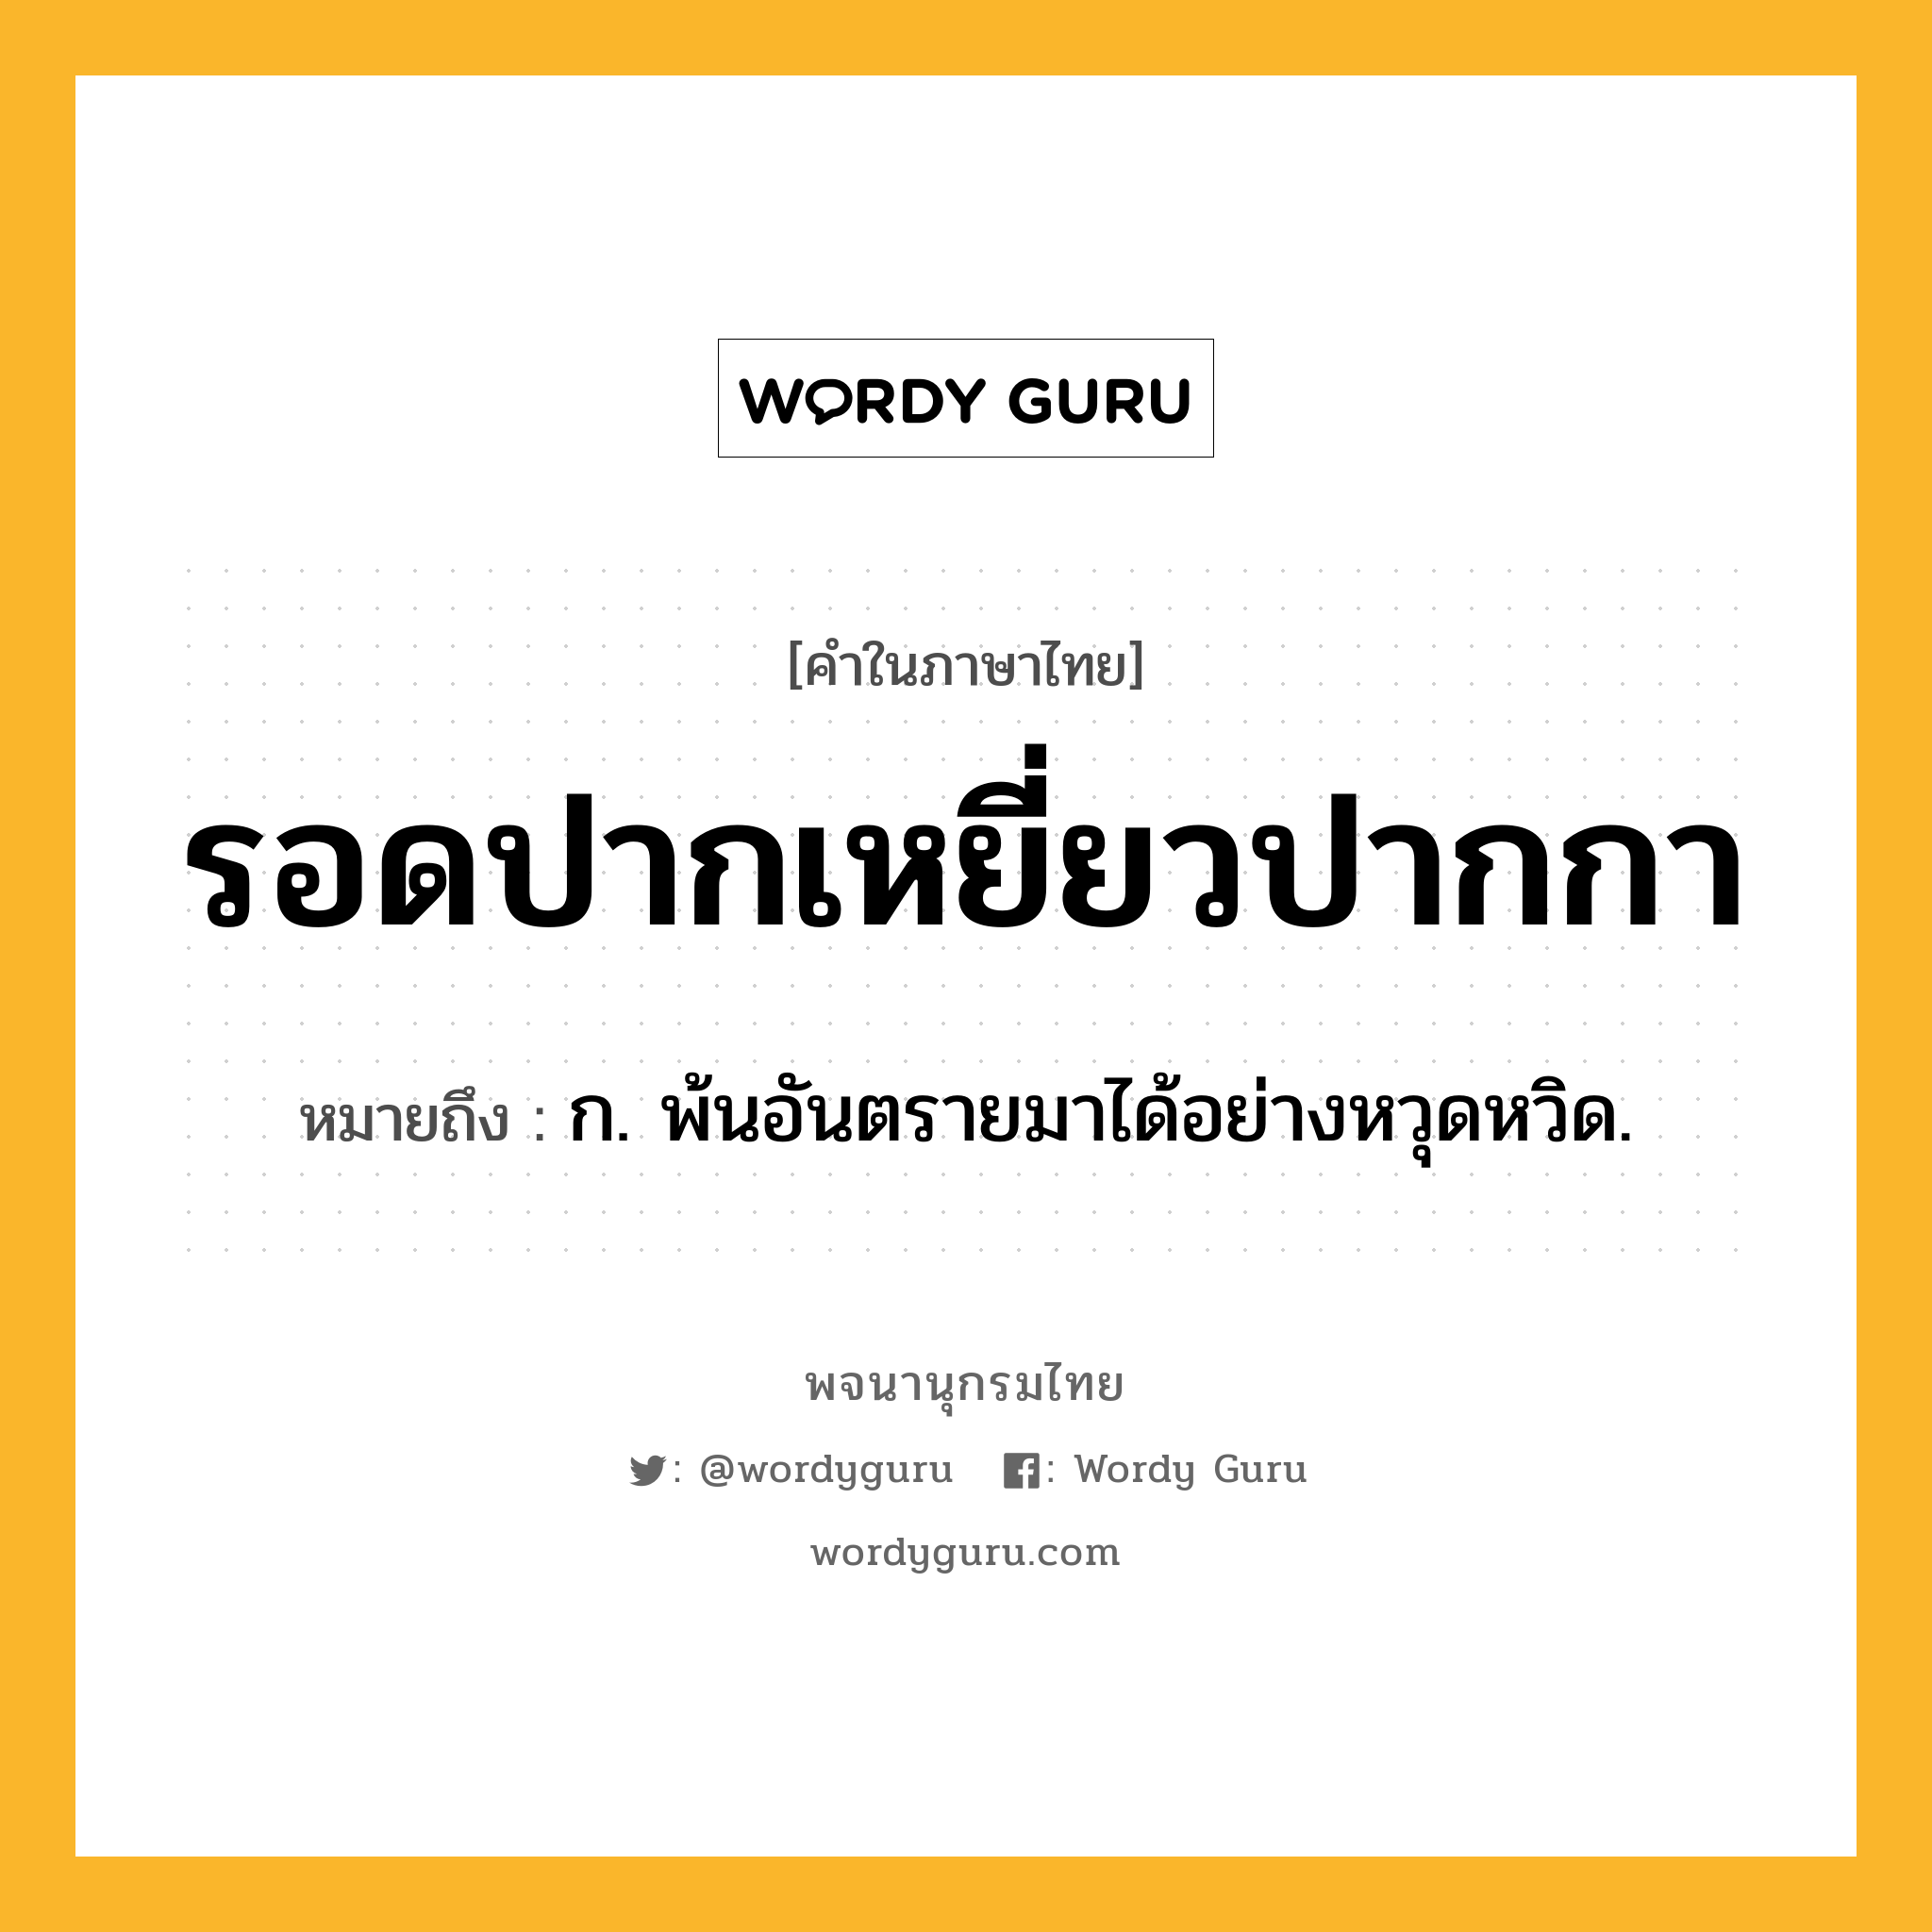 รอดปากเหยี่ยวปากกา ความหมาย หมายถึงอะไร?, คำในภาษาไทย รอดปากเหยี่ยวปากกา หมายถึง ก. พ้นอันตรายมาได้อย่างหวุดหวิด.